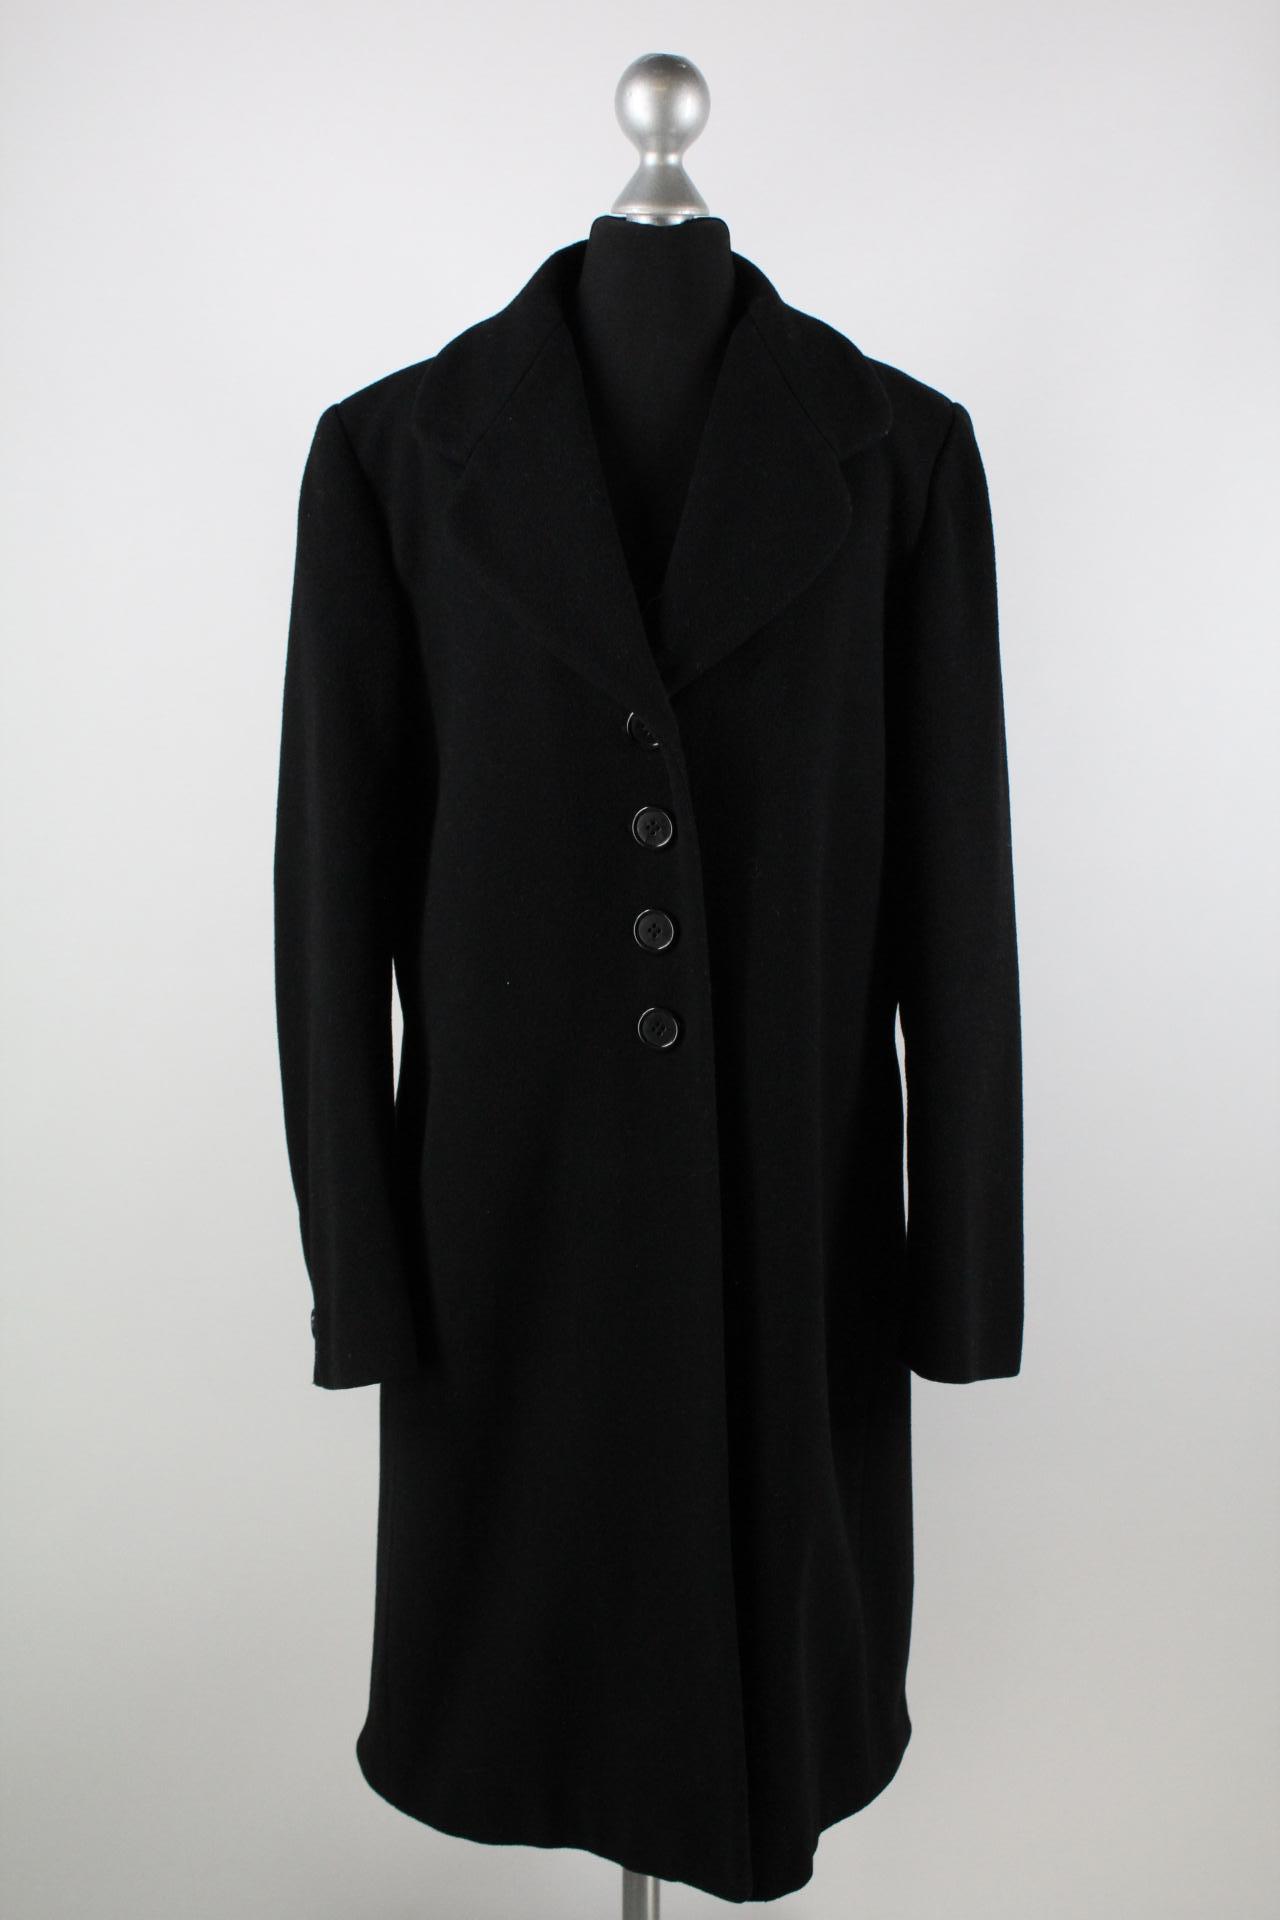 Montego Damen-Mantel schwarz Größe 38